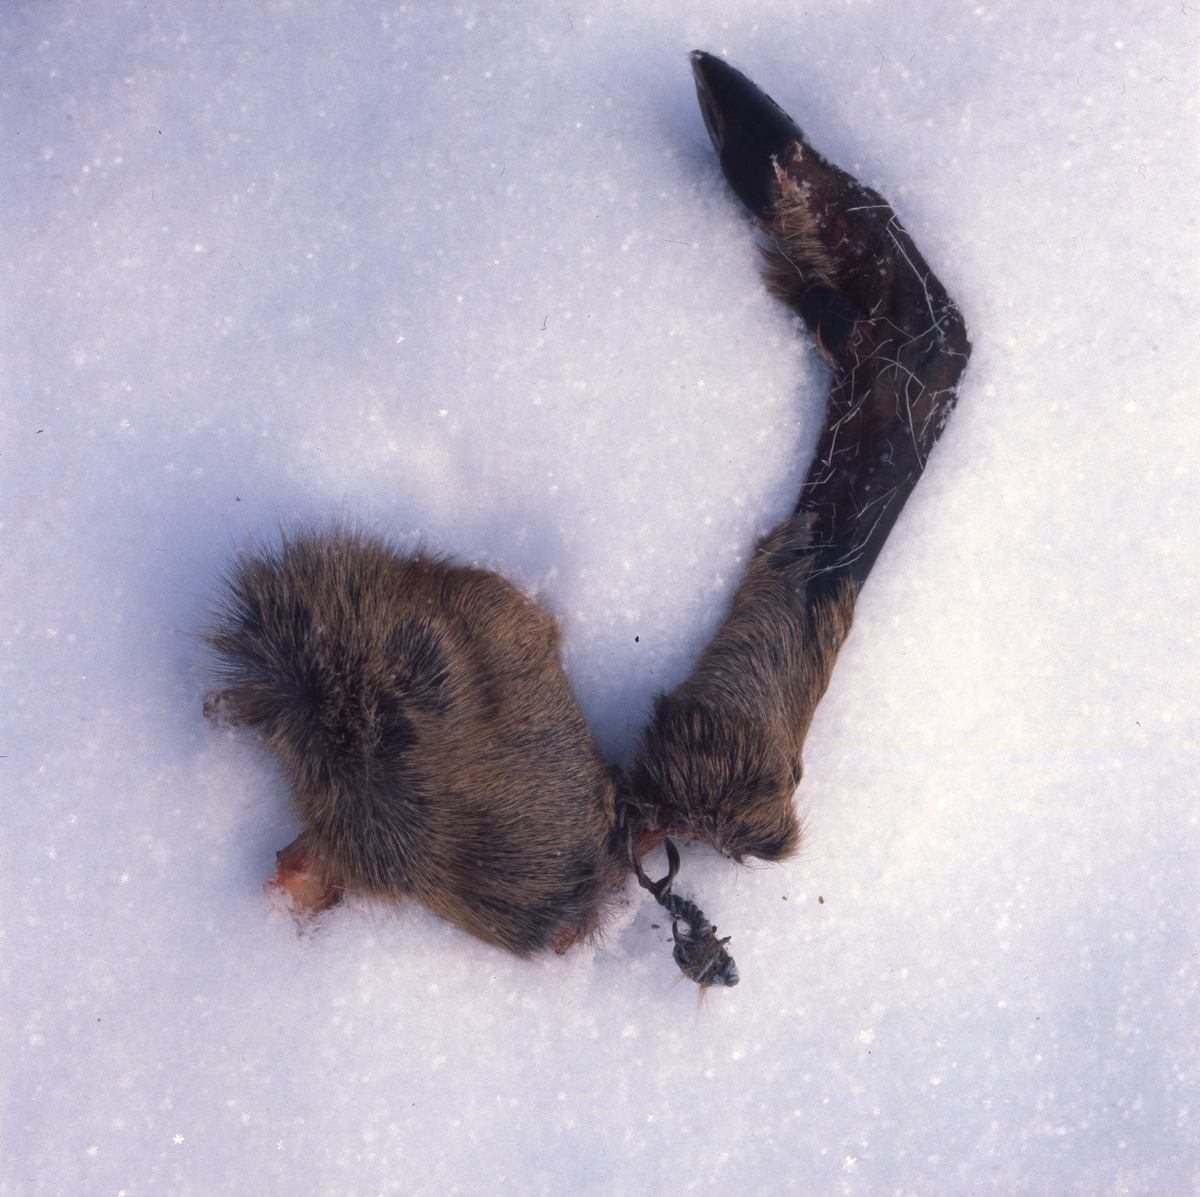 På snön ligger en del av ett rådjursben som fastnat i taggtråd och trasats sönder, januari 1981.